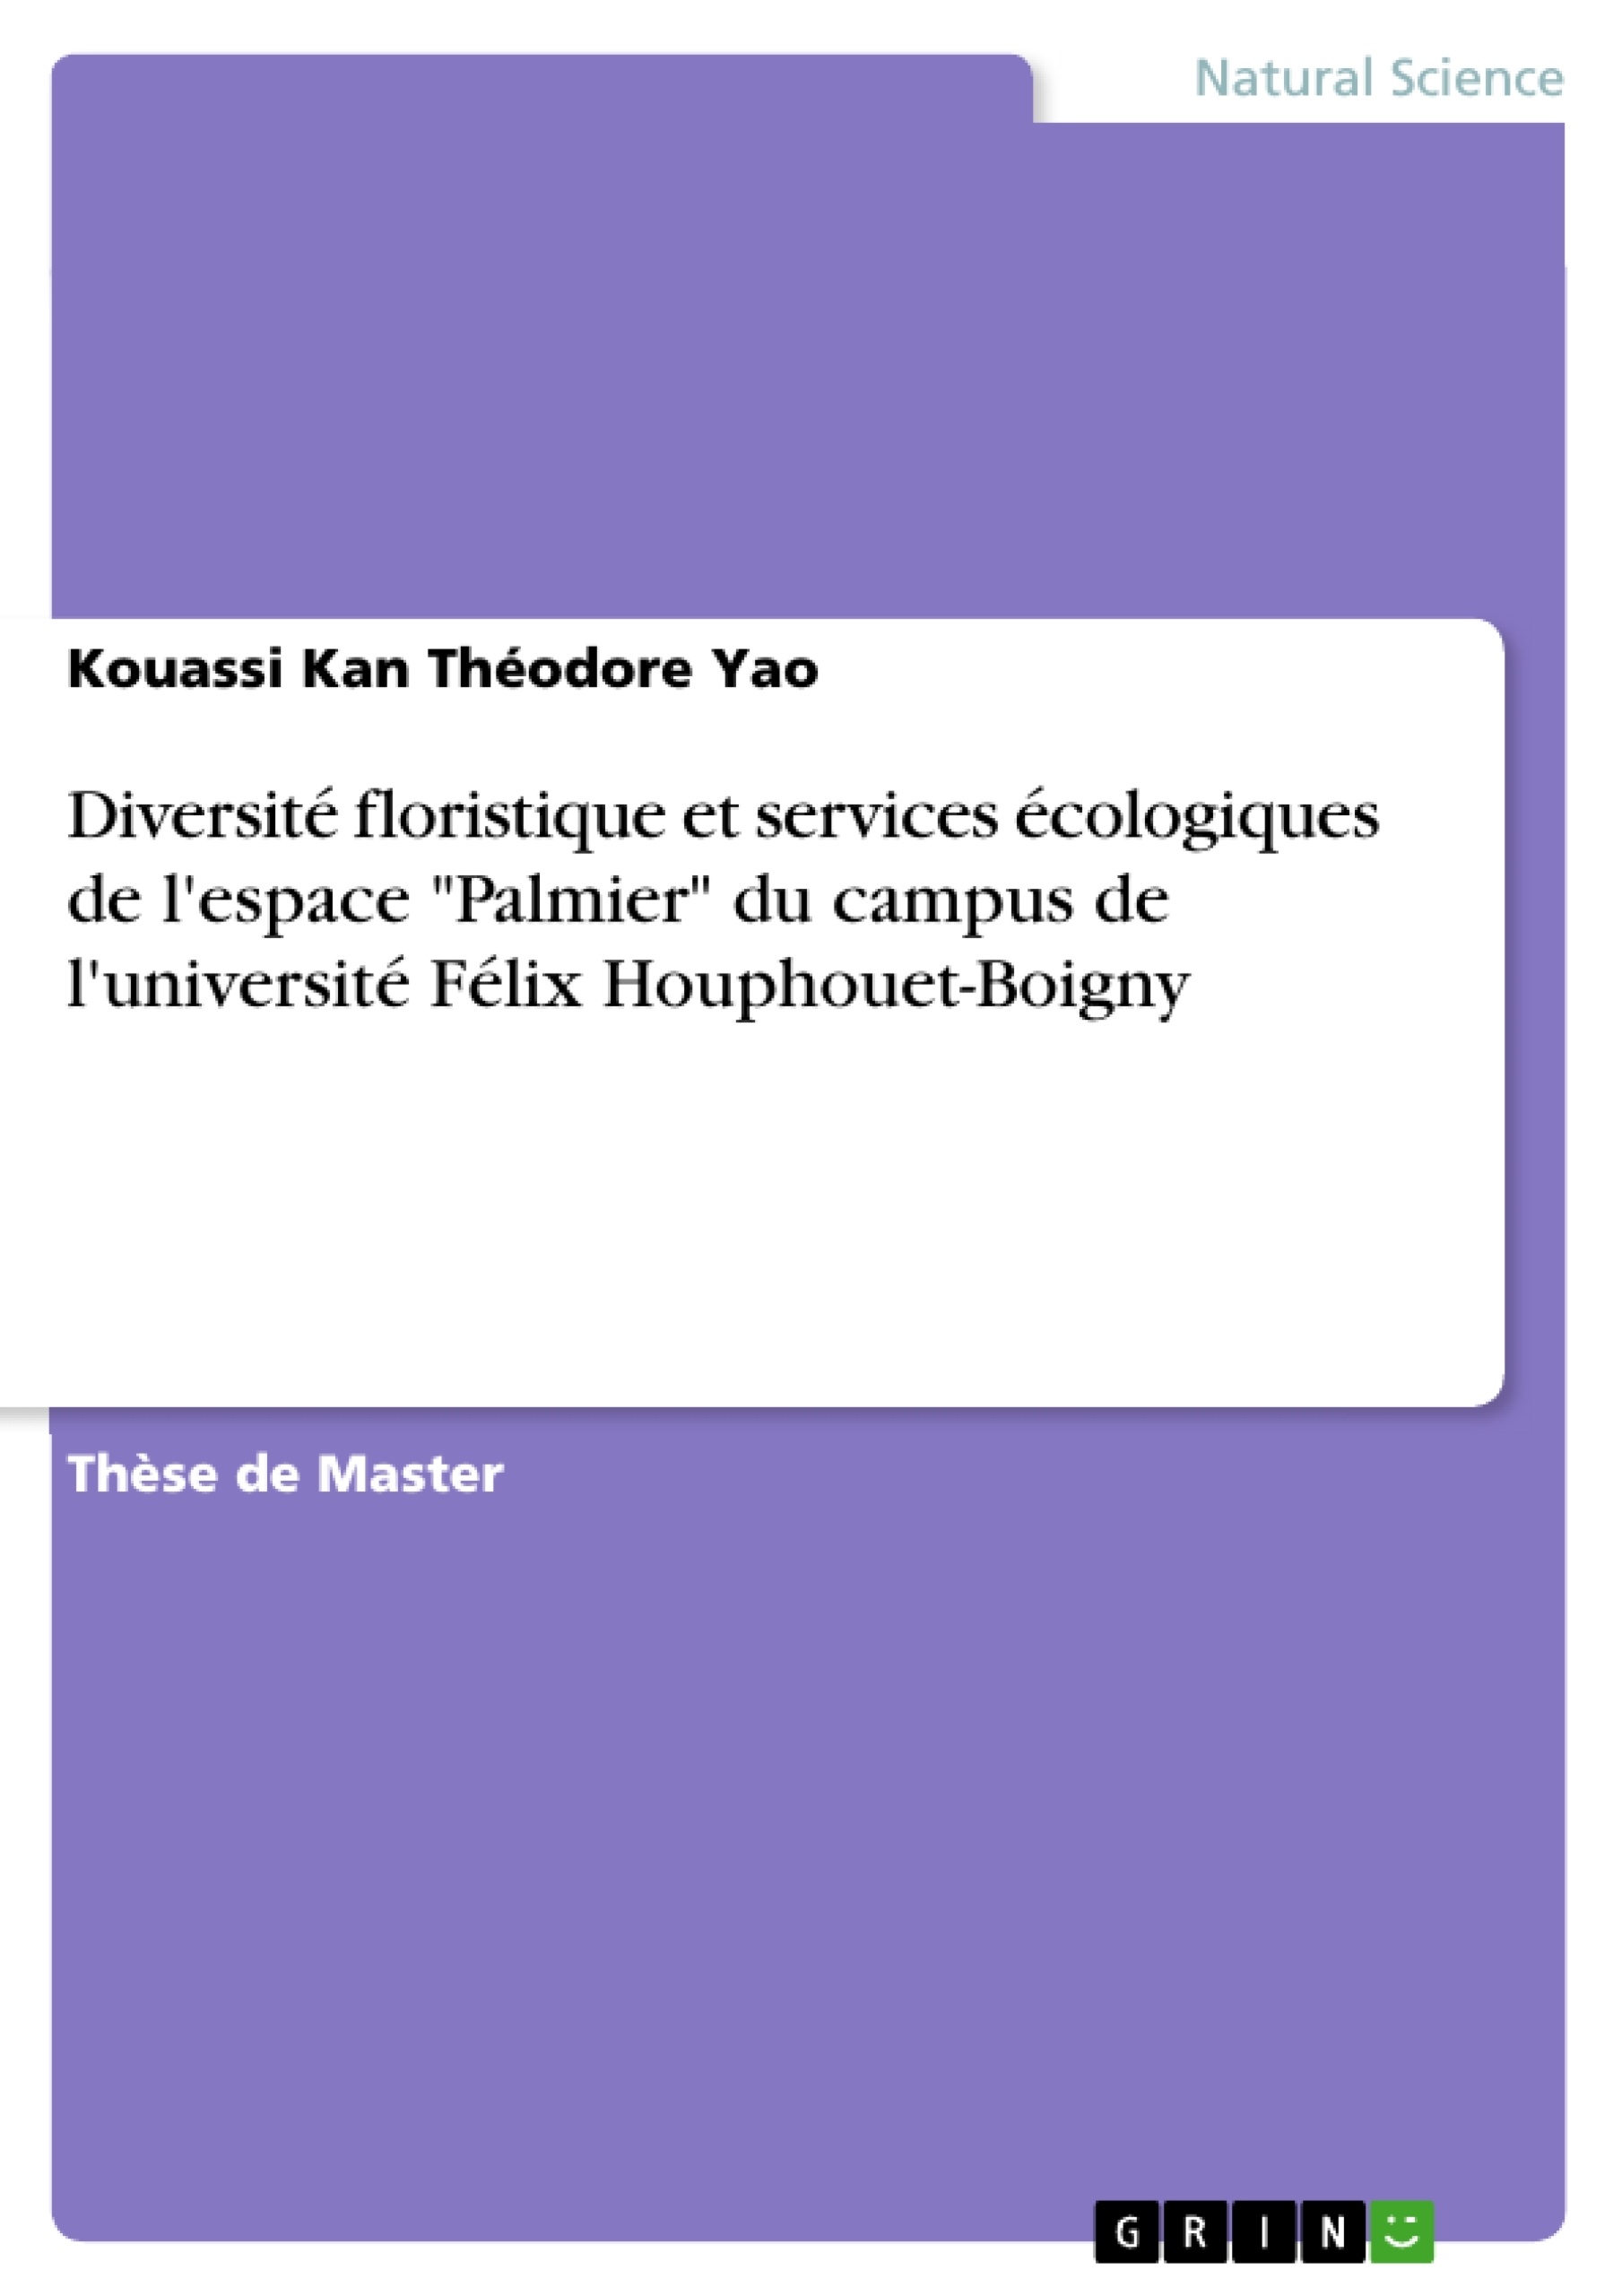 Título: Diversité floristique et services écologiques de l'espace "Palmier" du campus de l'université Félix Houphouet-Boigny